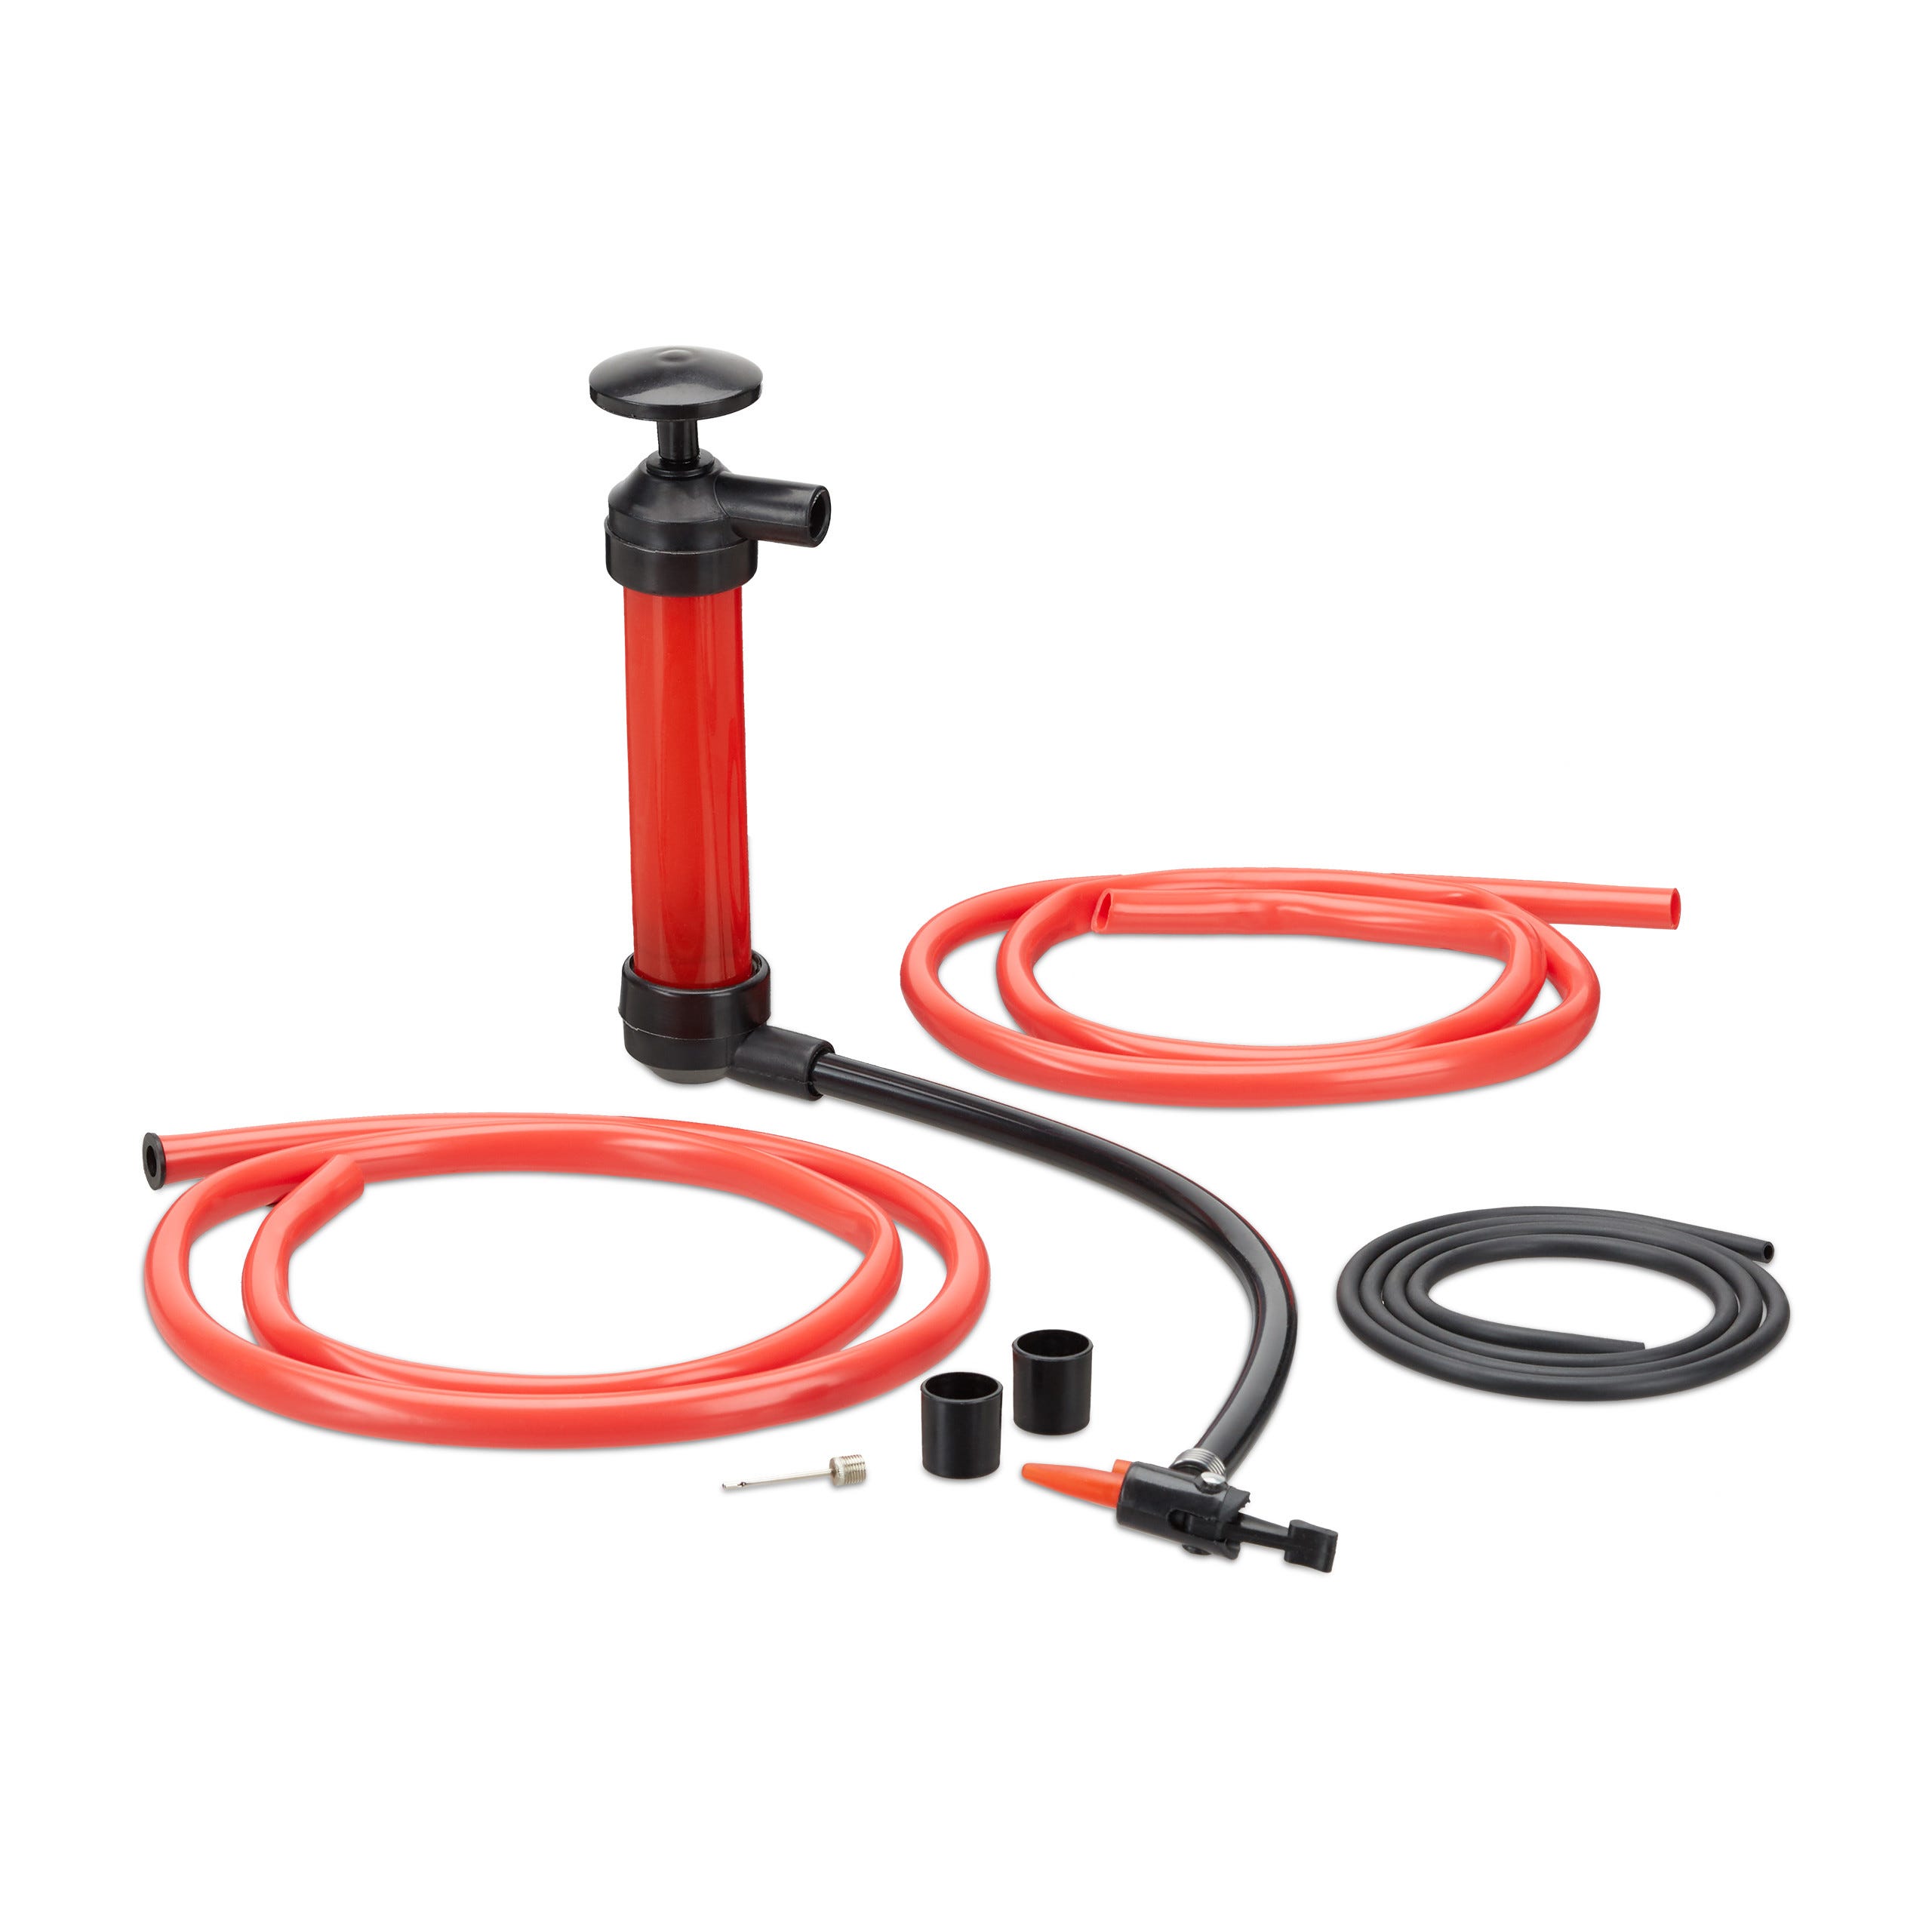 Pompe à huile électrique - Pompe de transfert de liquide électrique - Pompe  à siphon automatique portable - Pompe de transfert de liquide à piles, pour  gazole, diesel (rouge) 